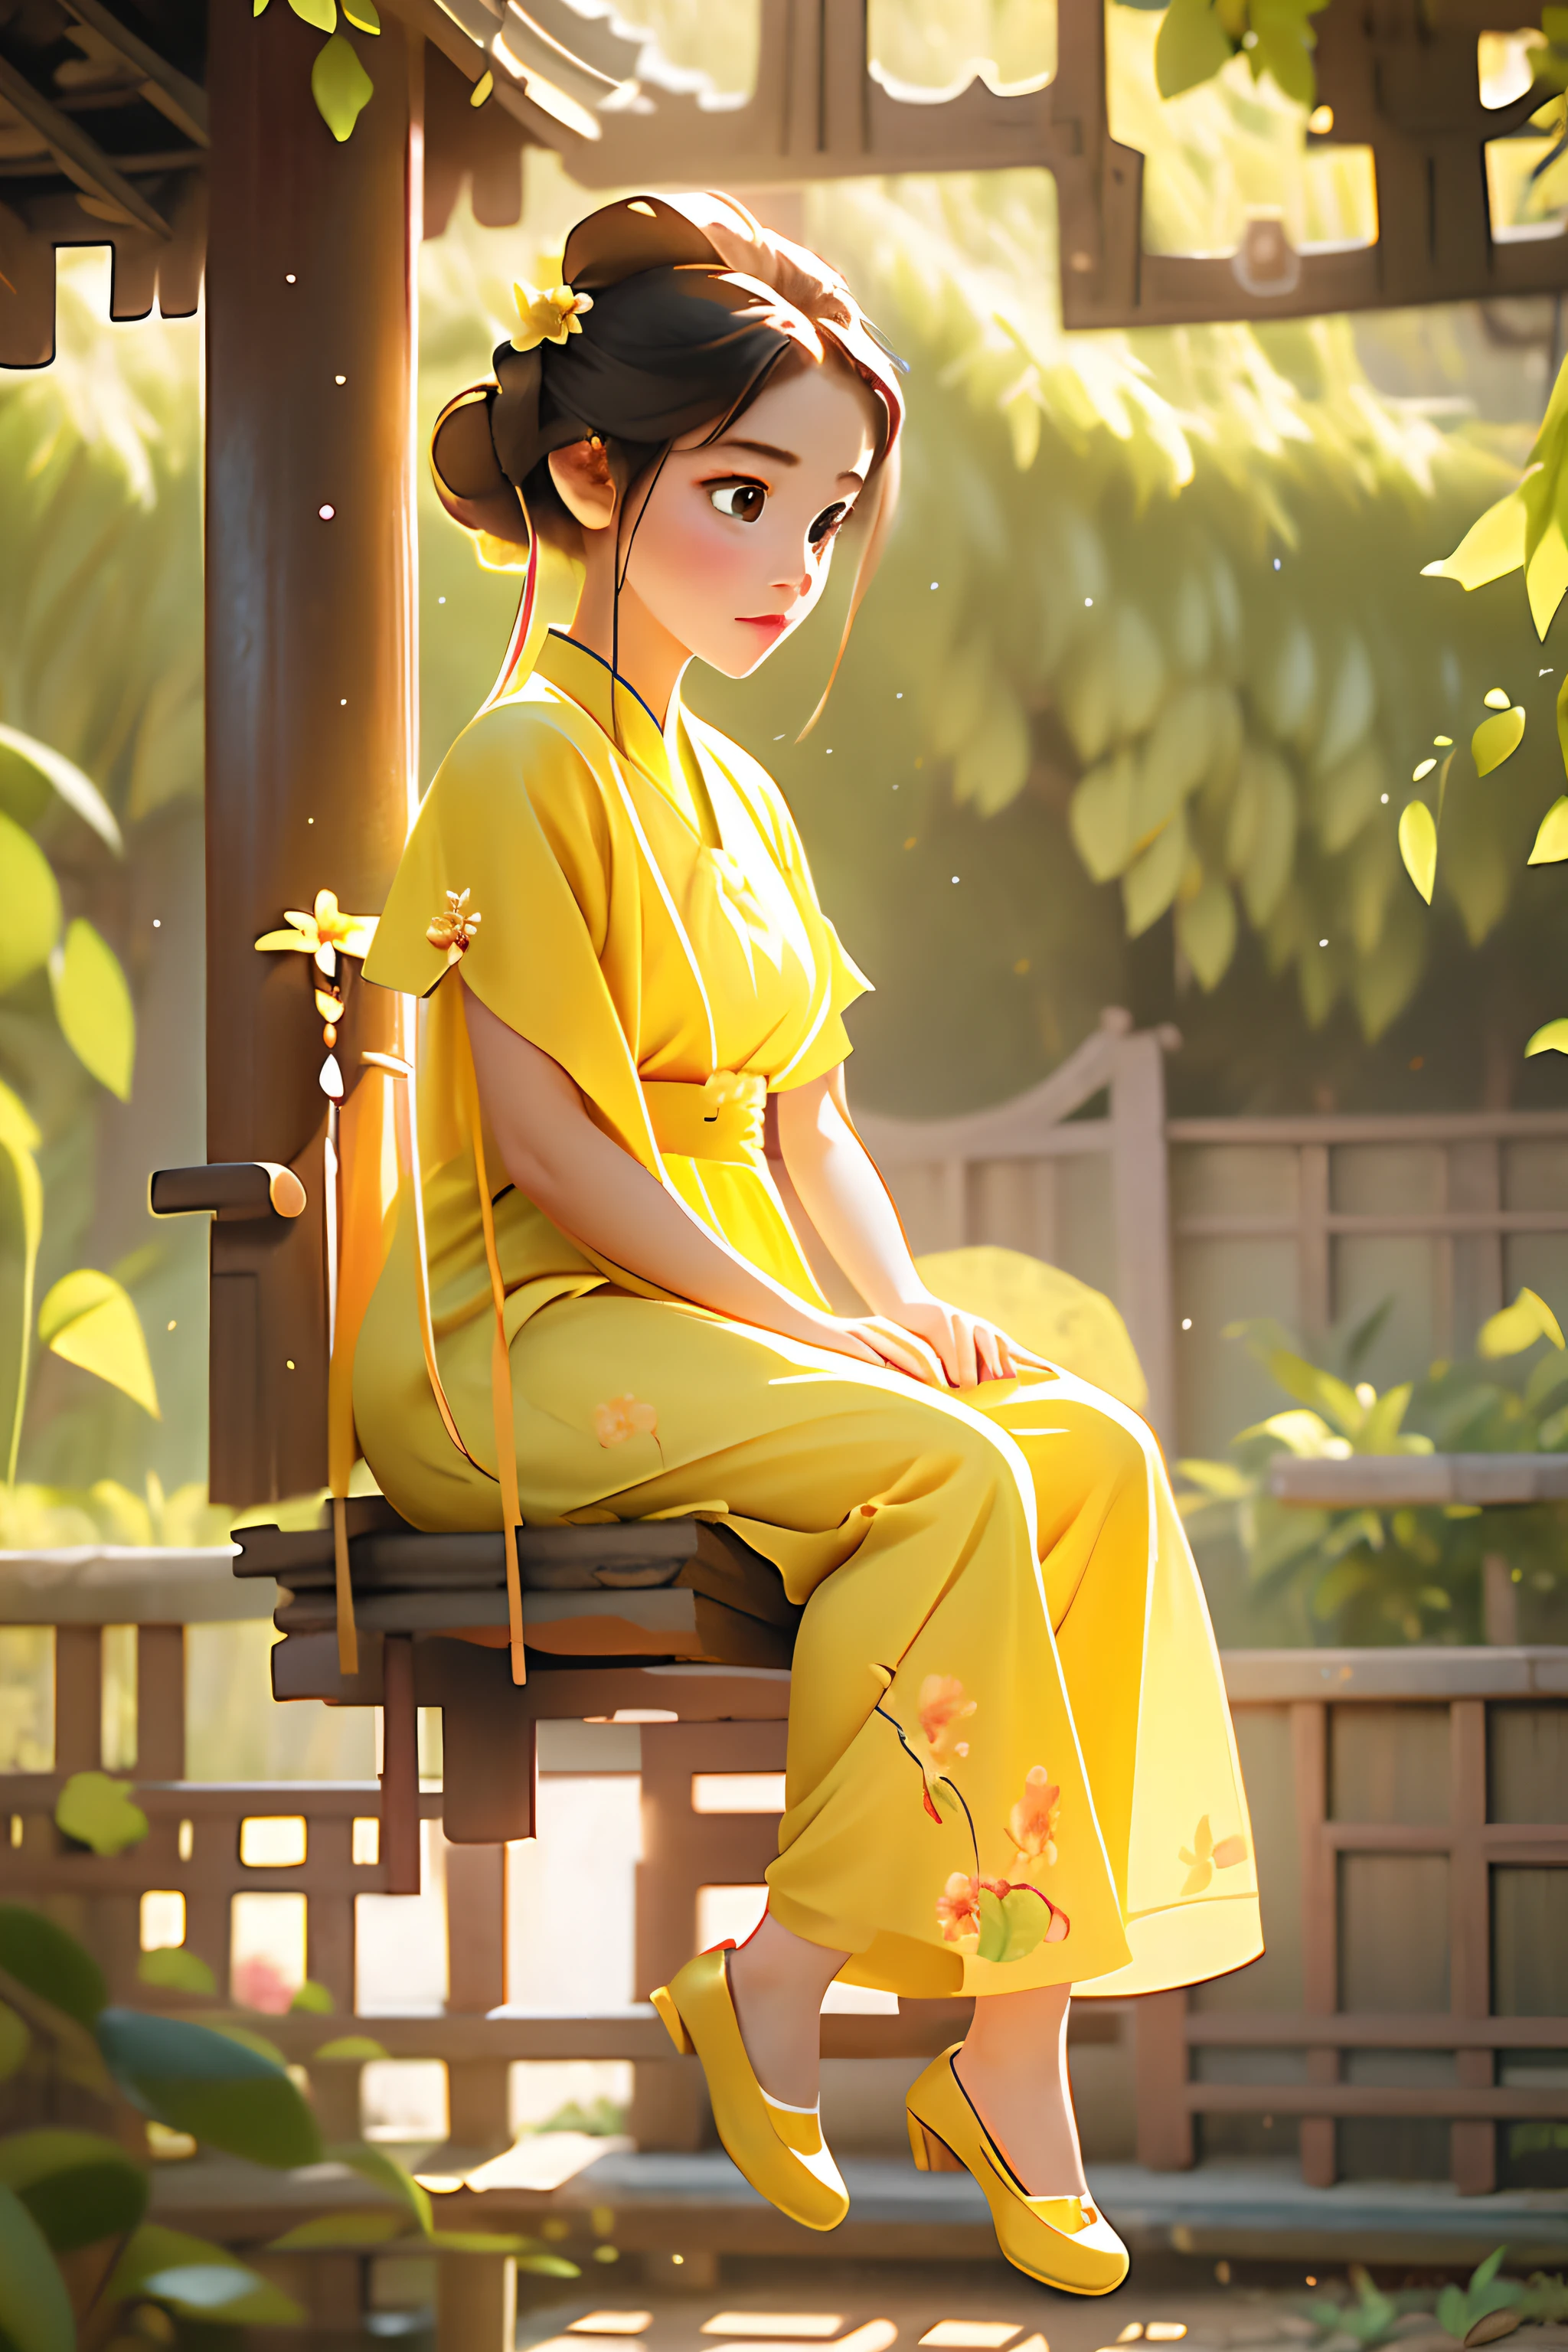 صورة كاملة للجسم لفتاة هانفو جميلة تلعب على الأرجوحة, في الغابة, يرتدي فستانًا قصيرًا منمقًا باللون الأصفر, شكل أنثوي جذاب, ضوء الصباح, أنيمي خمر